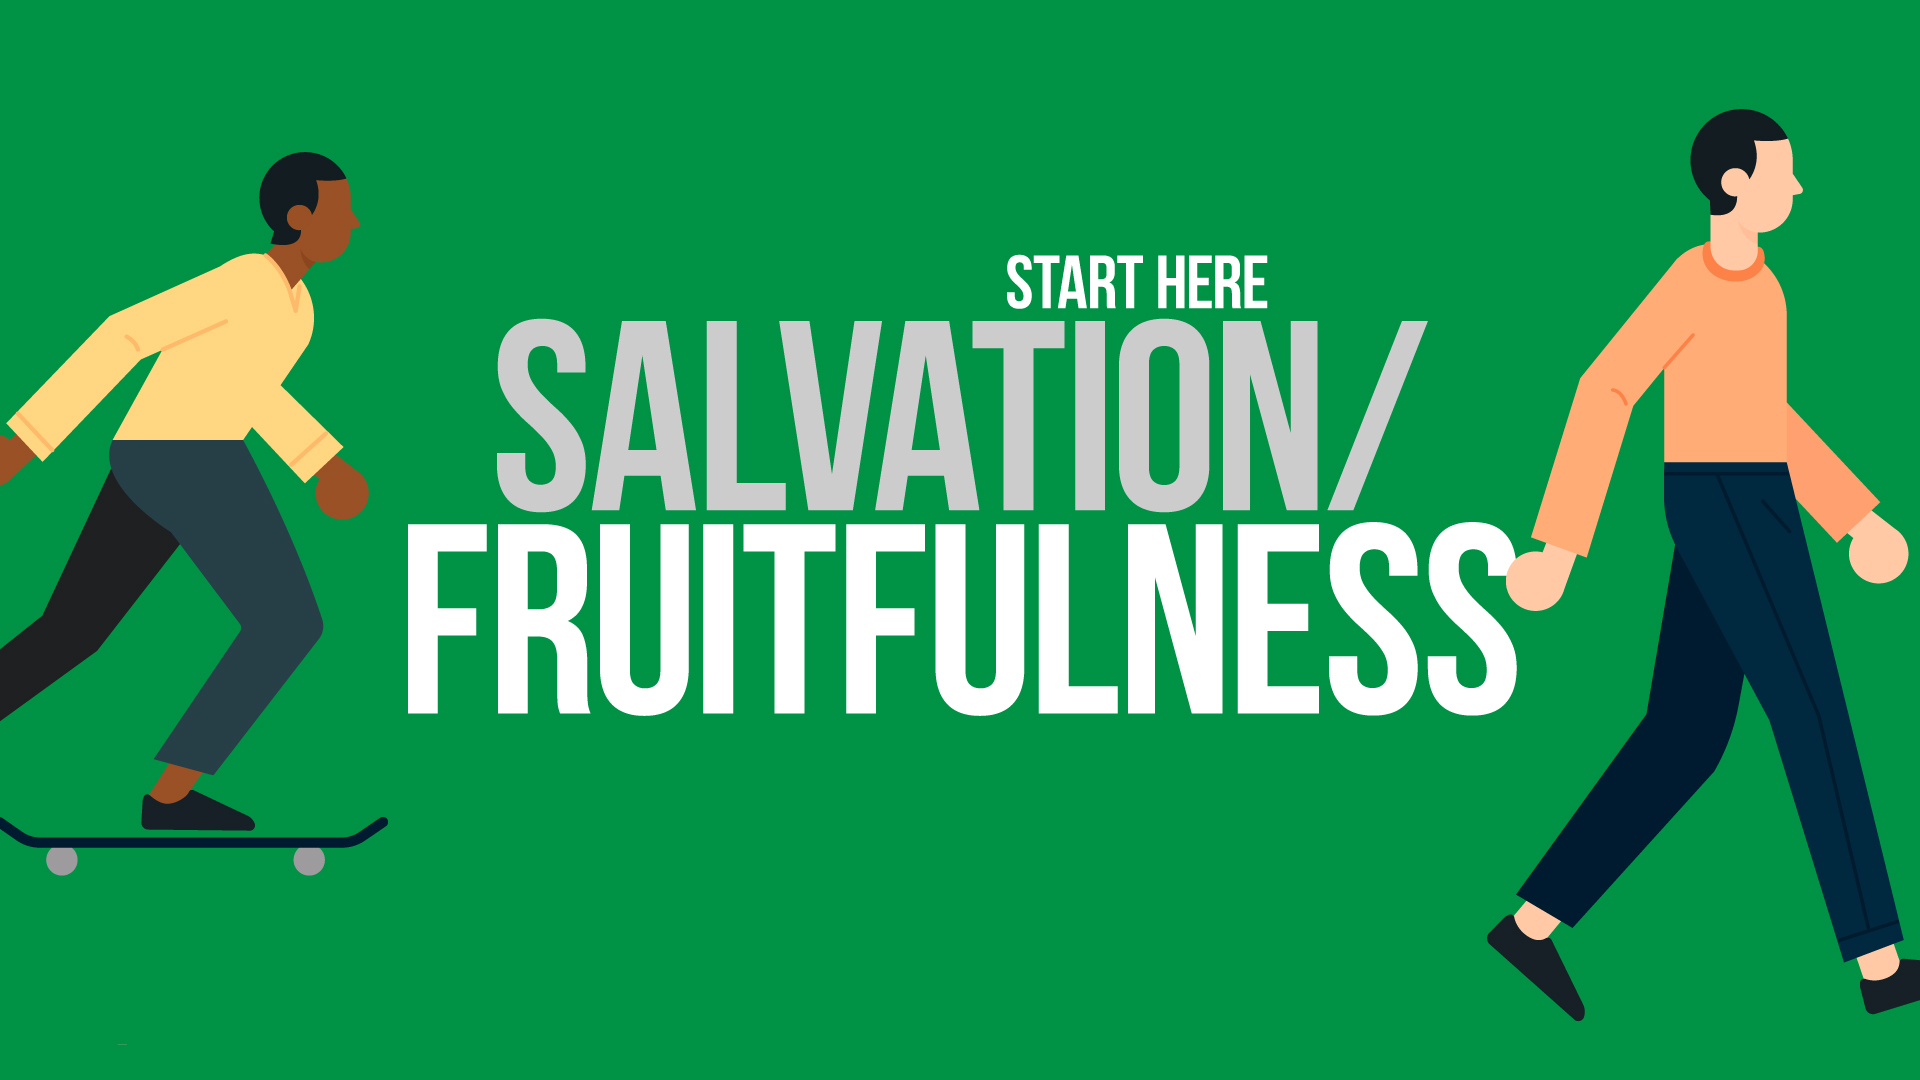 StartHere_Fruitfulness